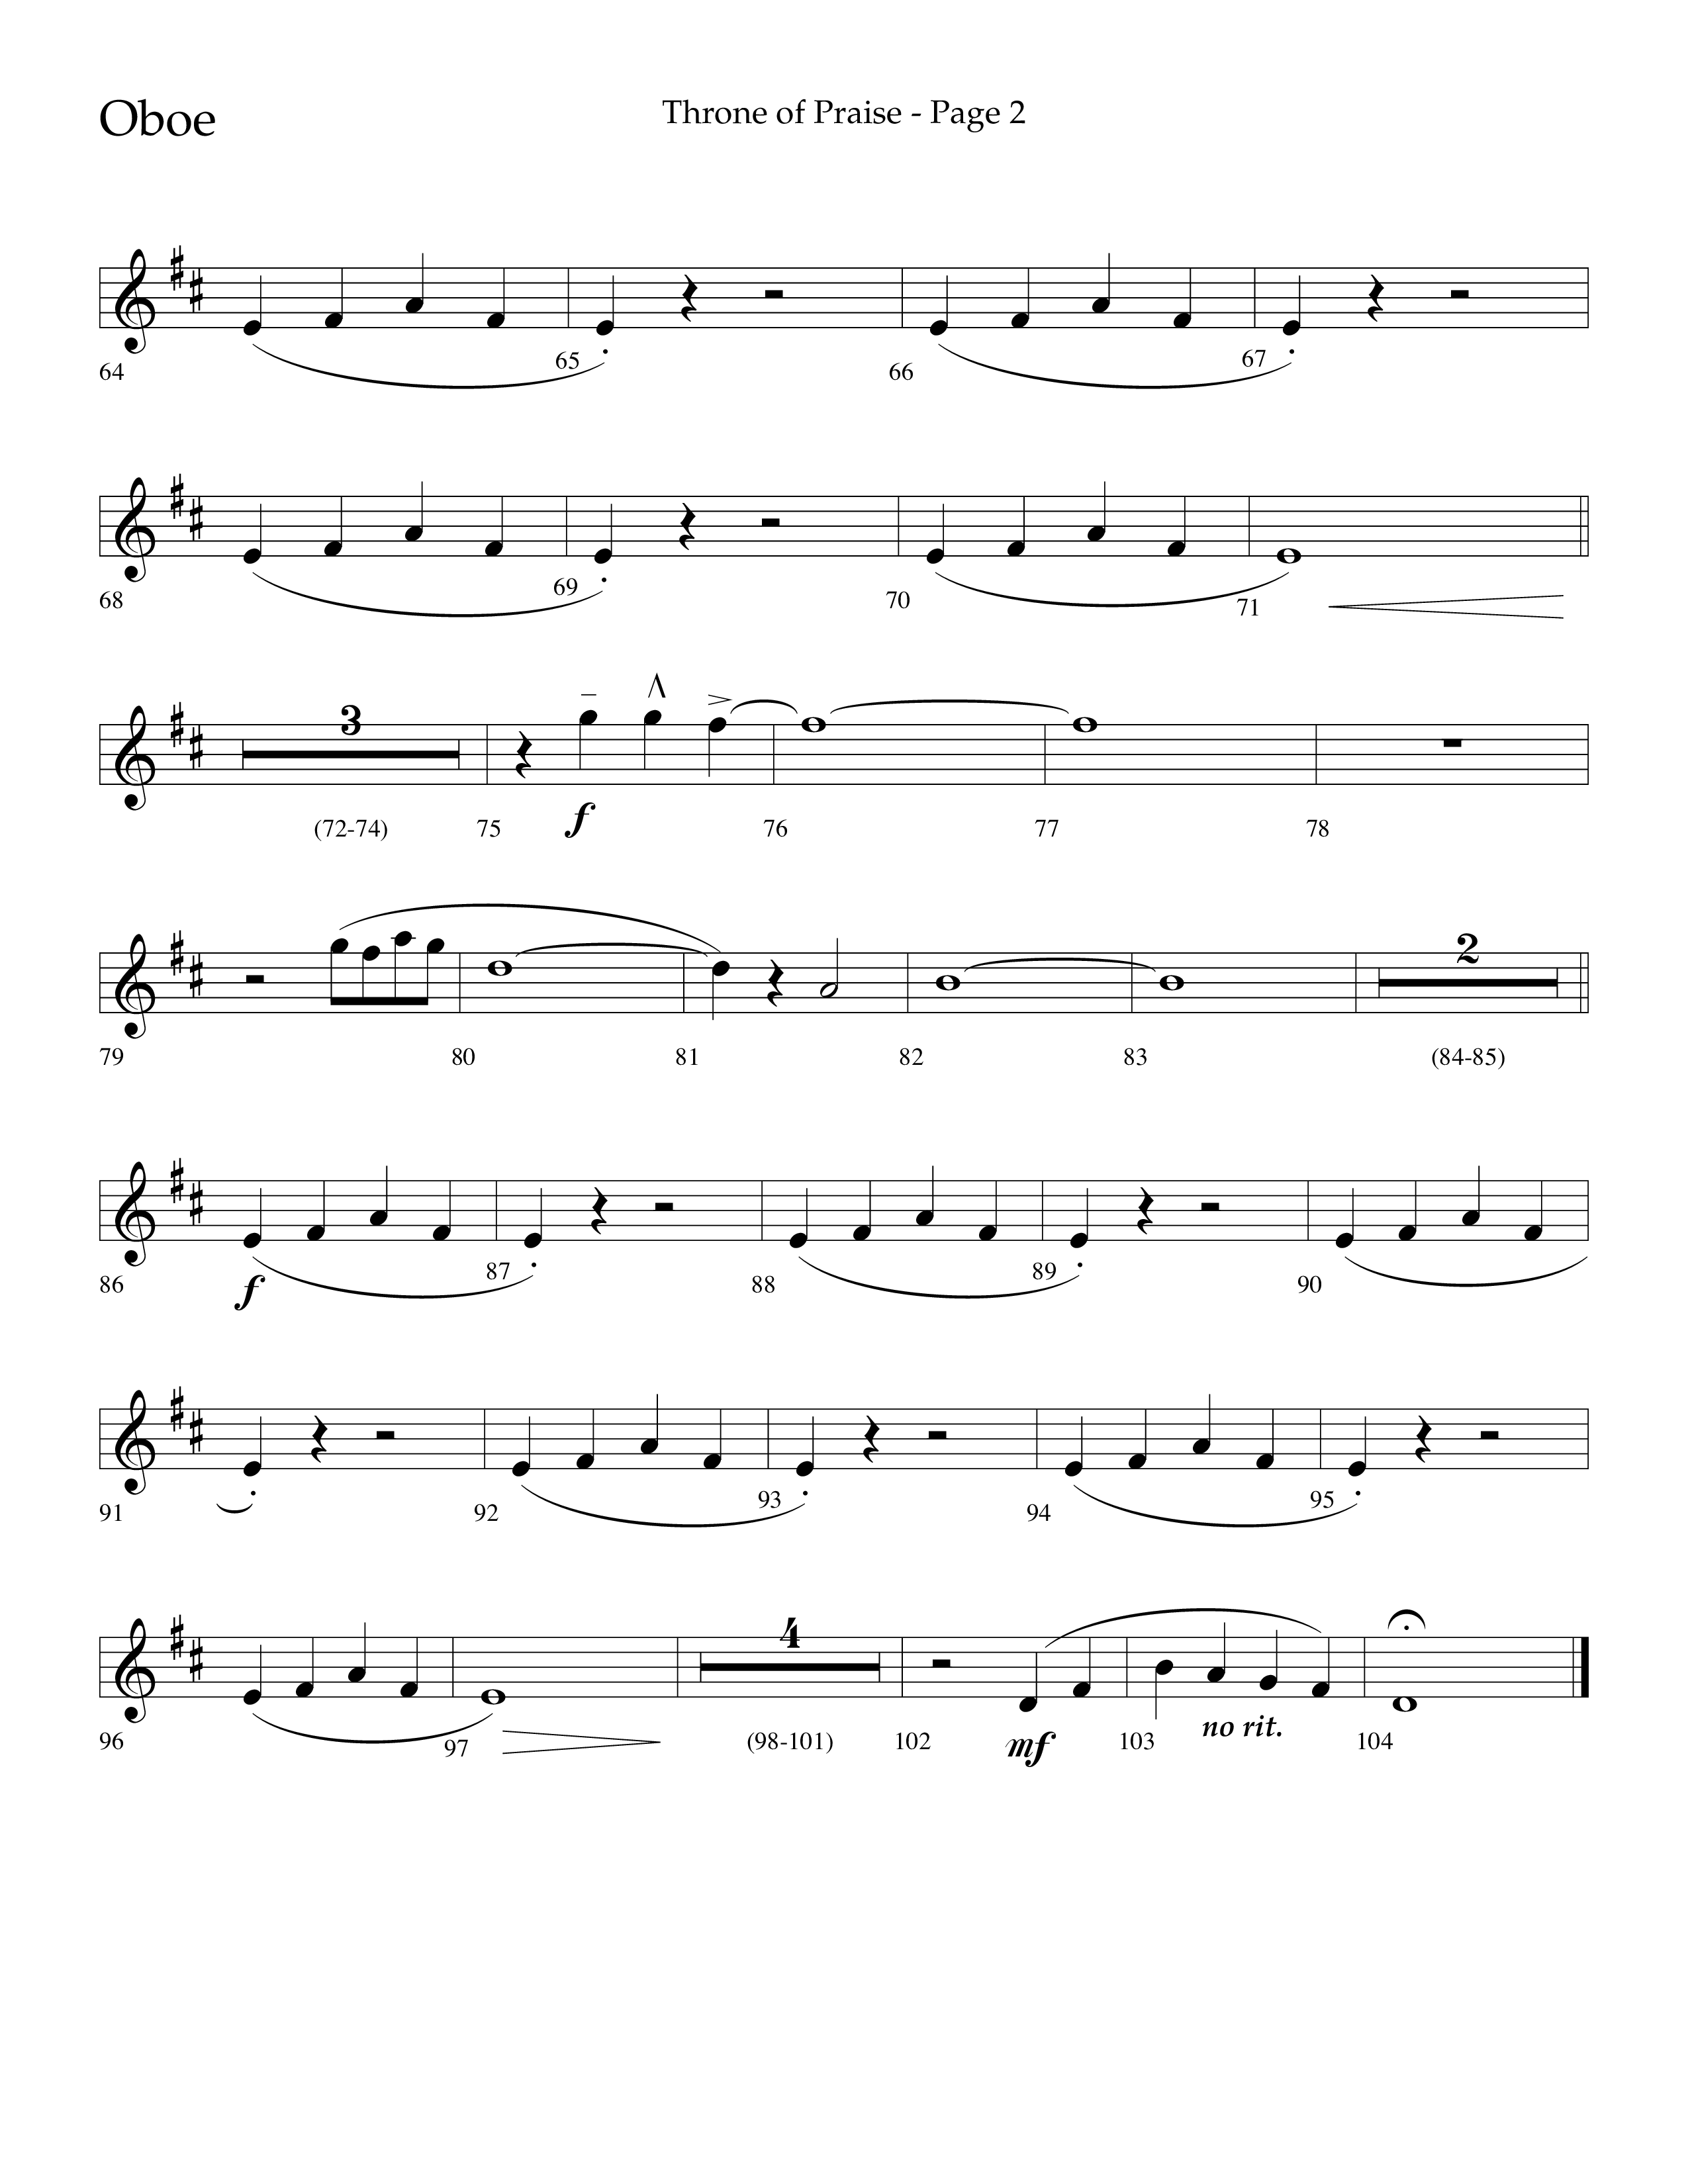 Throne Of Praise (Choral Anthem SATB) Oboe (Lifeway Choral / Arr. J. Daniel Smith)